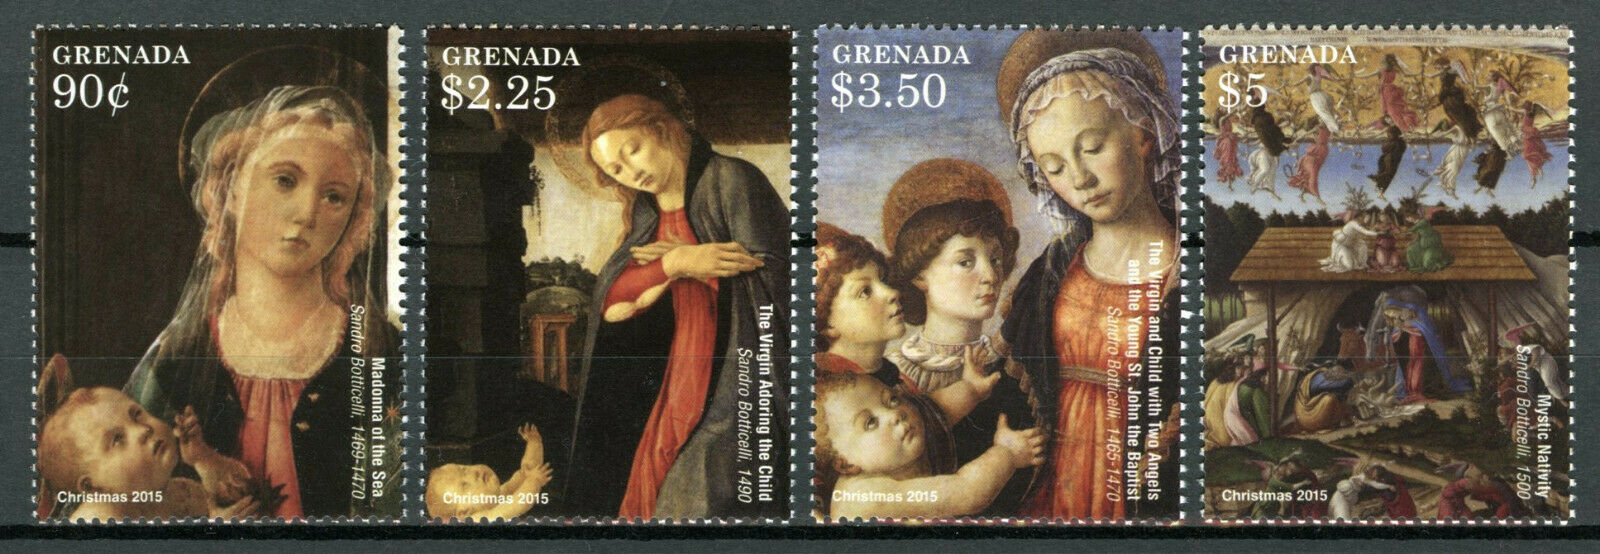 Grenada 2015 MNH Art Stamps Christmas Sandro Botticelli Paintings 4v Set